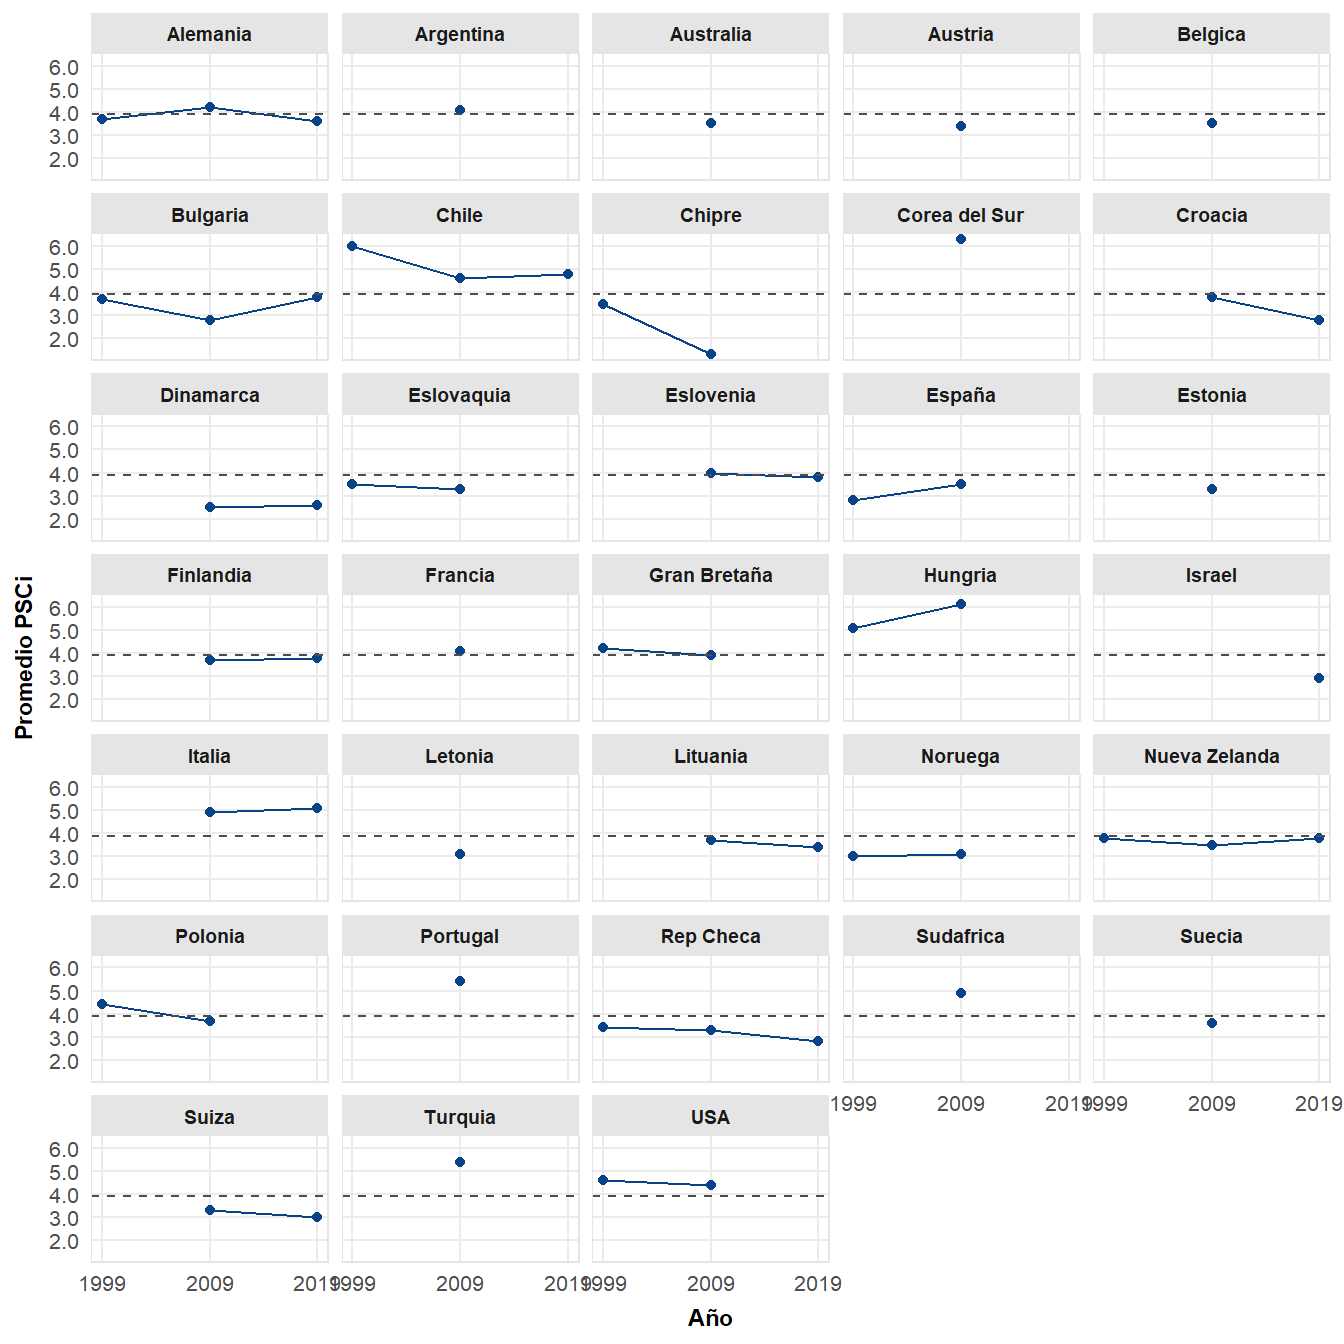 Evolución de las percepciones de conflicto social entre 1999 y 2019. Línea horizontal representa el valor promedio de \(PSCi\) para todos los años y países analizados. Fuente: Elaboración propia en base a ISSP (1999-2019).